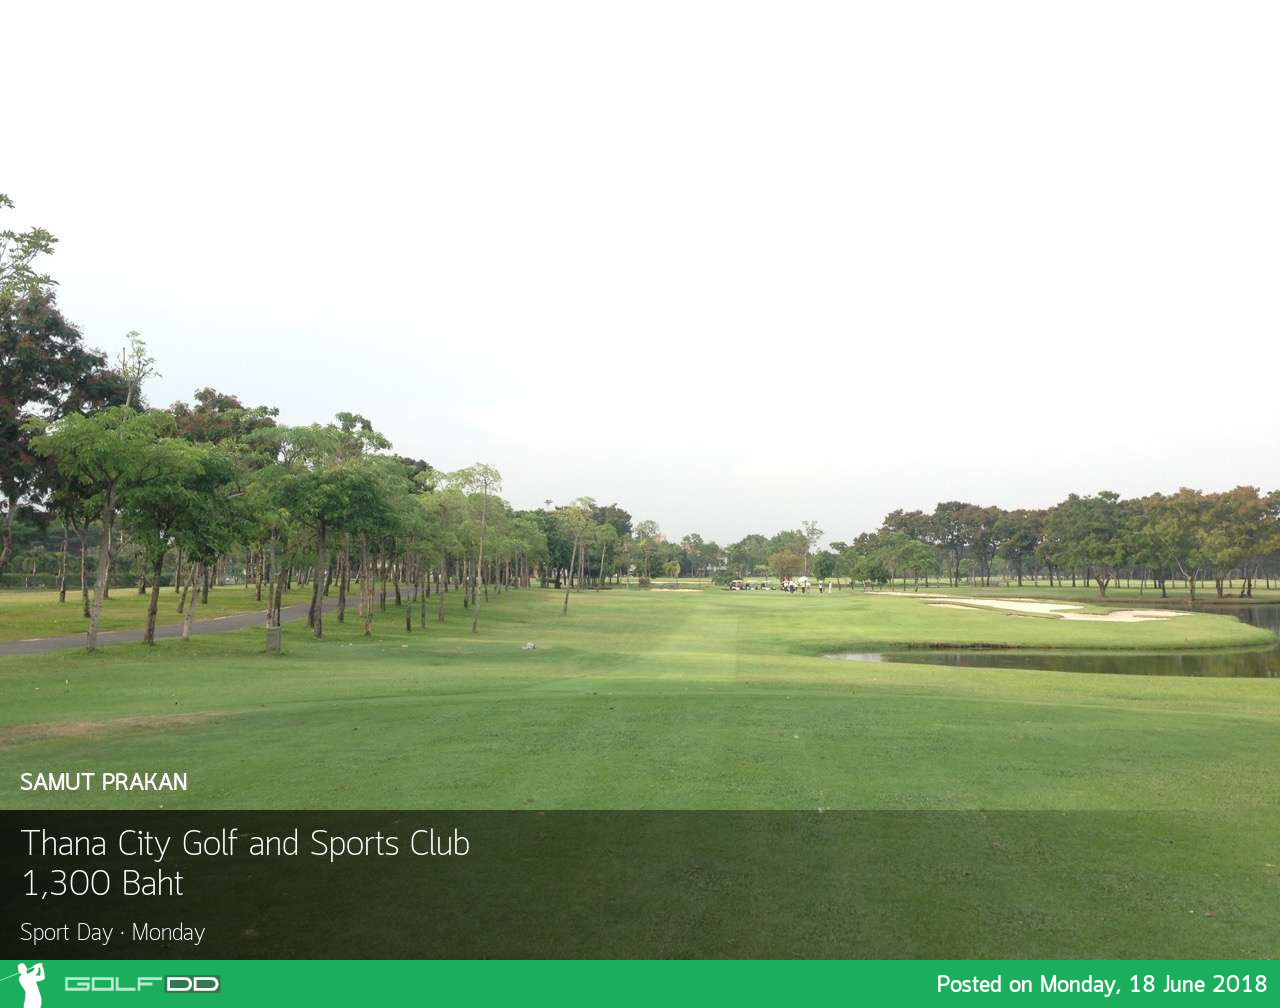 Thana City Golf and Sport Club ลดราคาแบบจัดหนัก มากกว่า 50% 